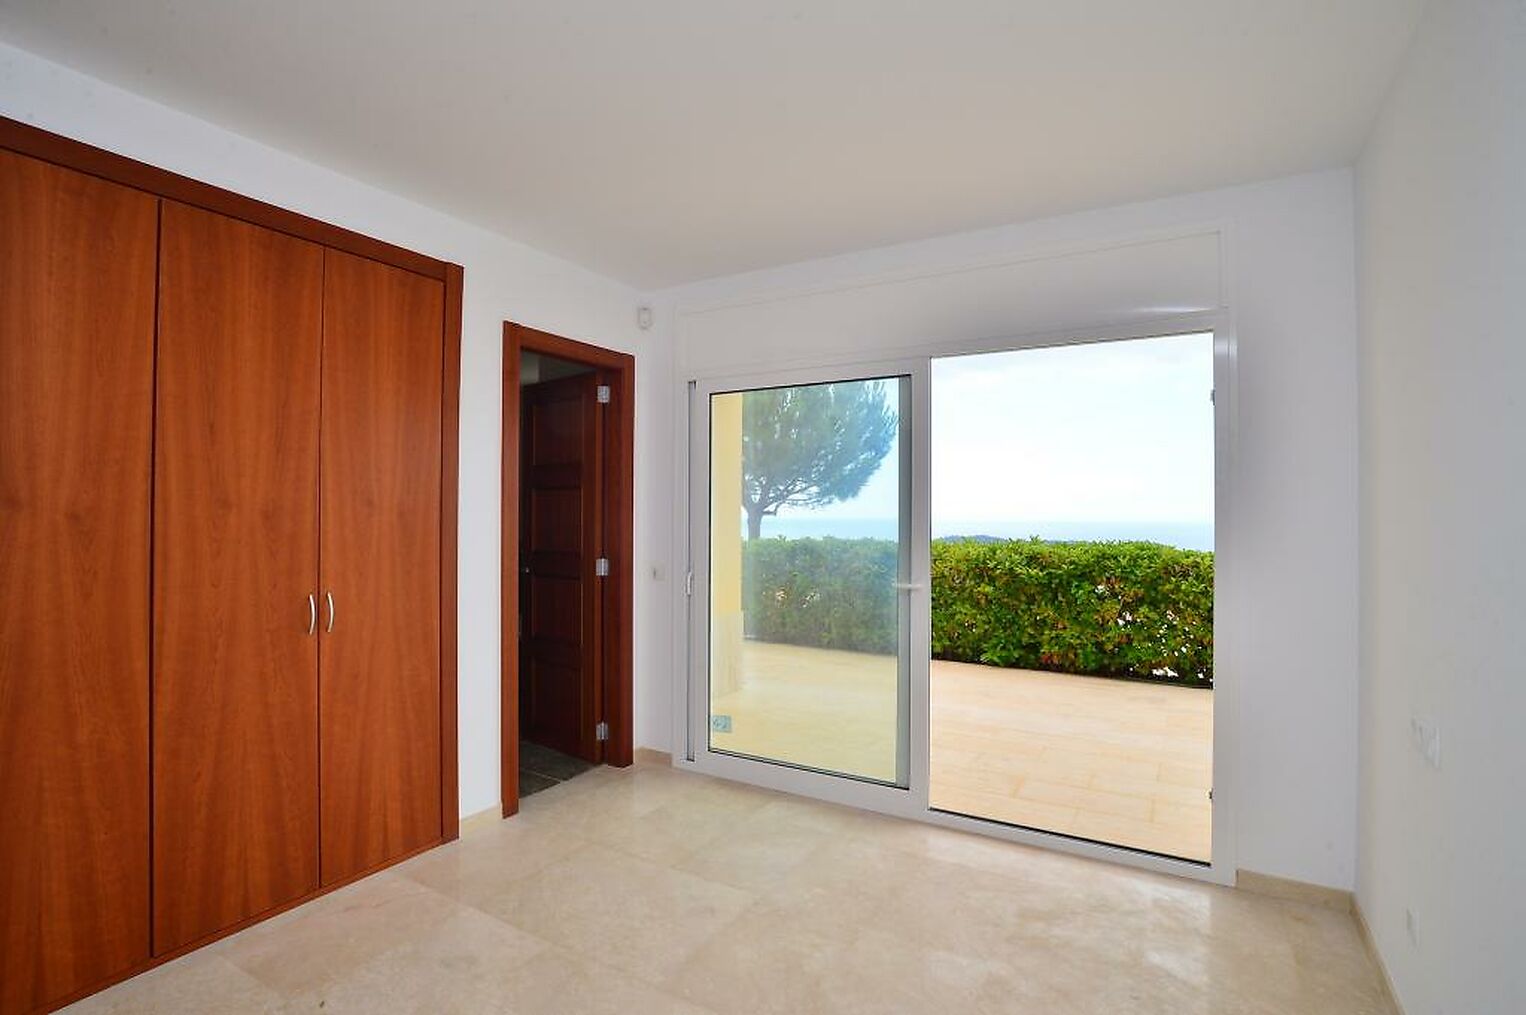 Fabulous modern villa in a great area of Playa de Aro.